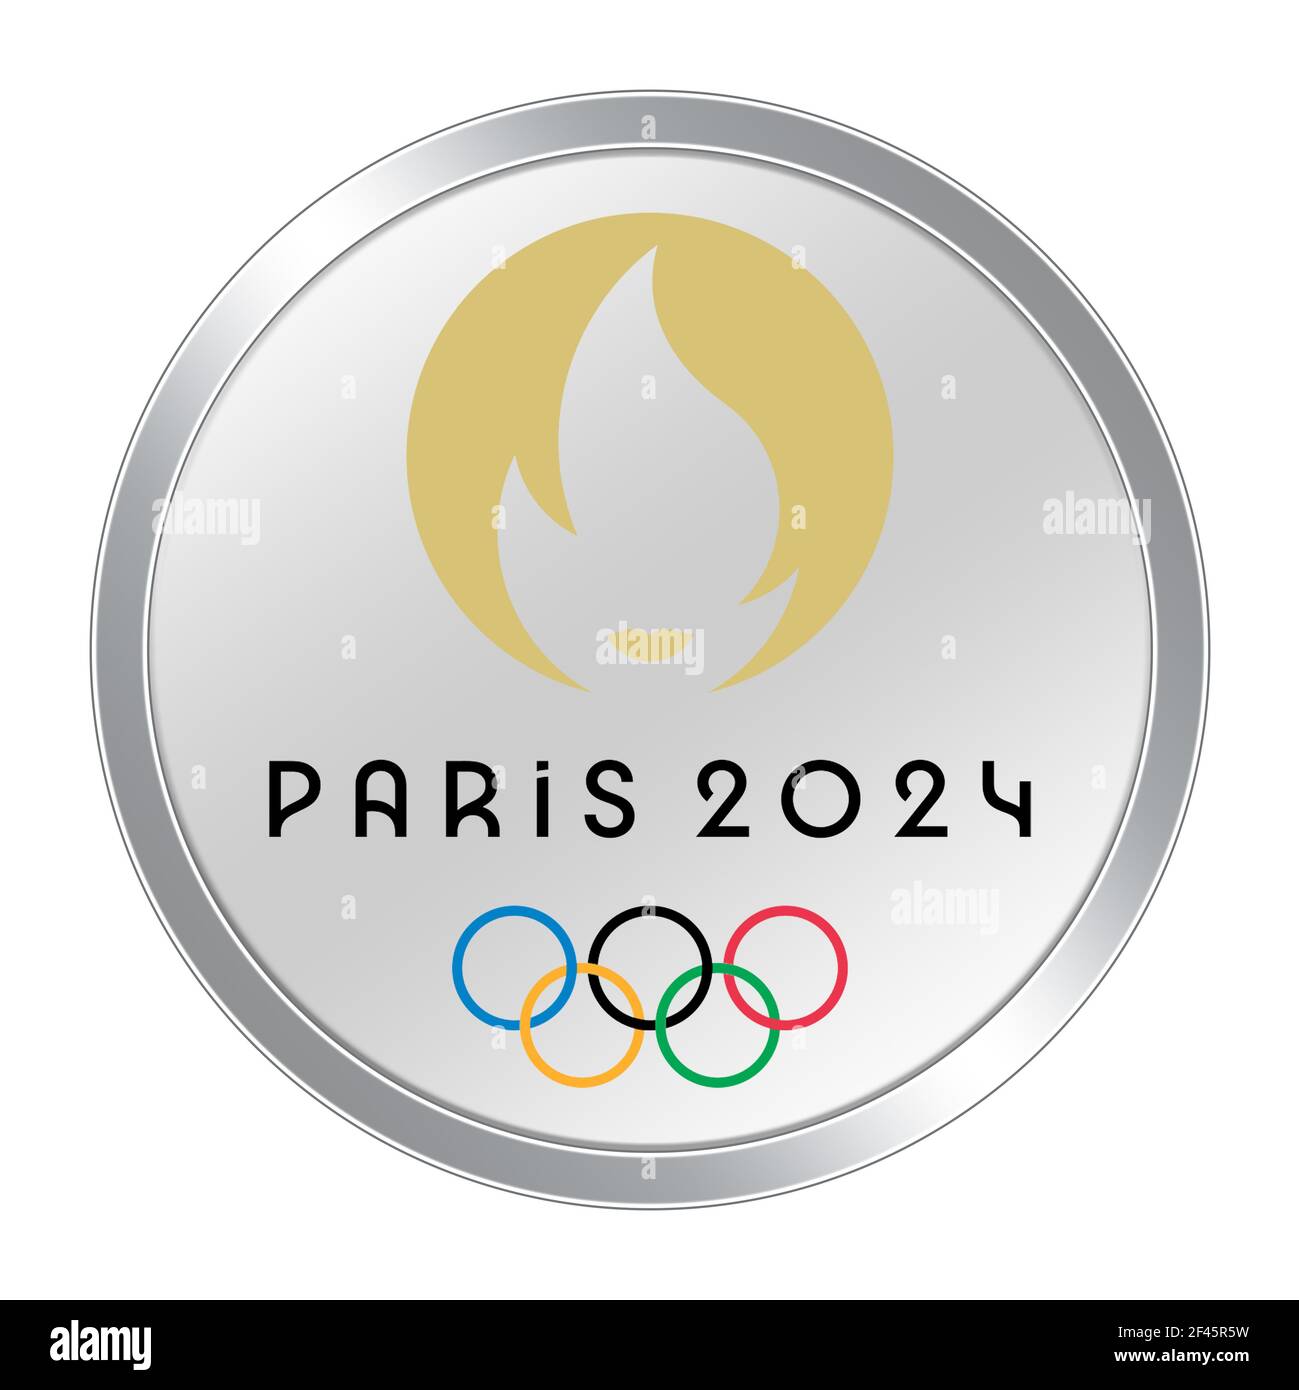 Где проходят олимпийские игры 2024 года. Paris 2024 Olympics. Эмблема олимпиады 2024. Медали олимпиады 2024. Медали Париж 2024.